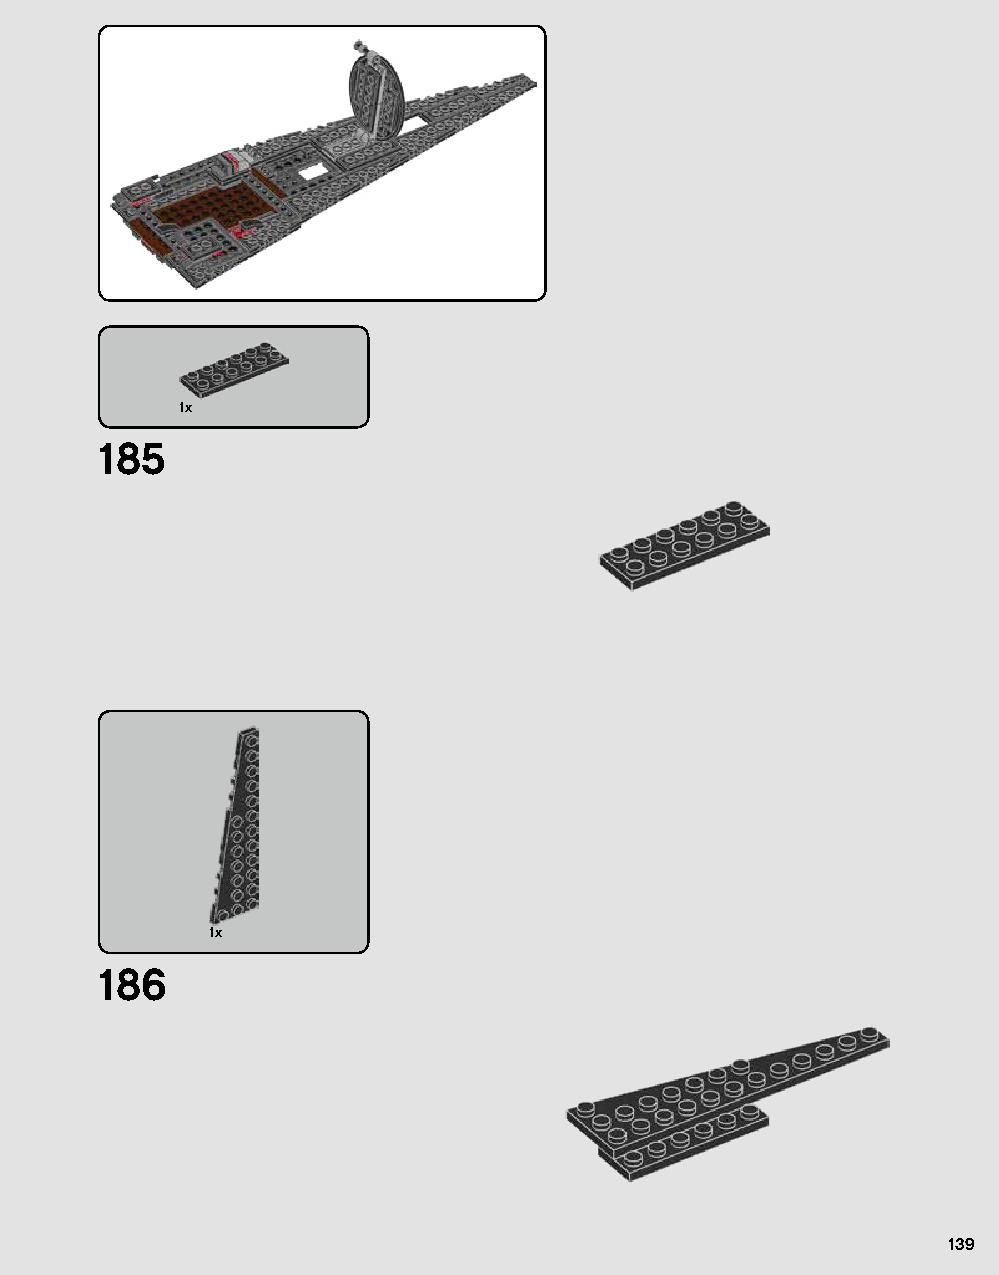 ダース・ベイダーの城 75251 レゴの商品情報 レゴの説明書・組立方法 139 page